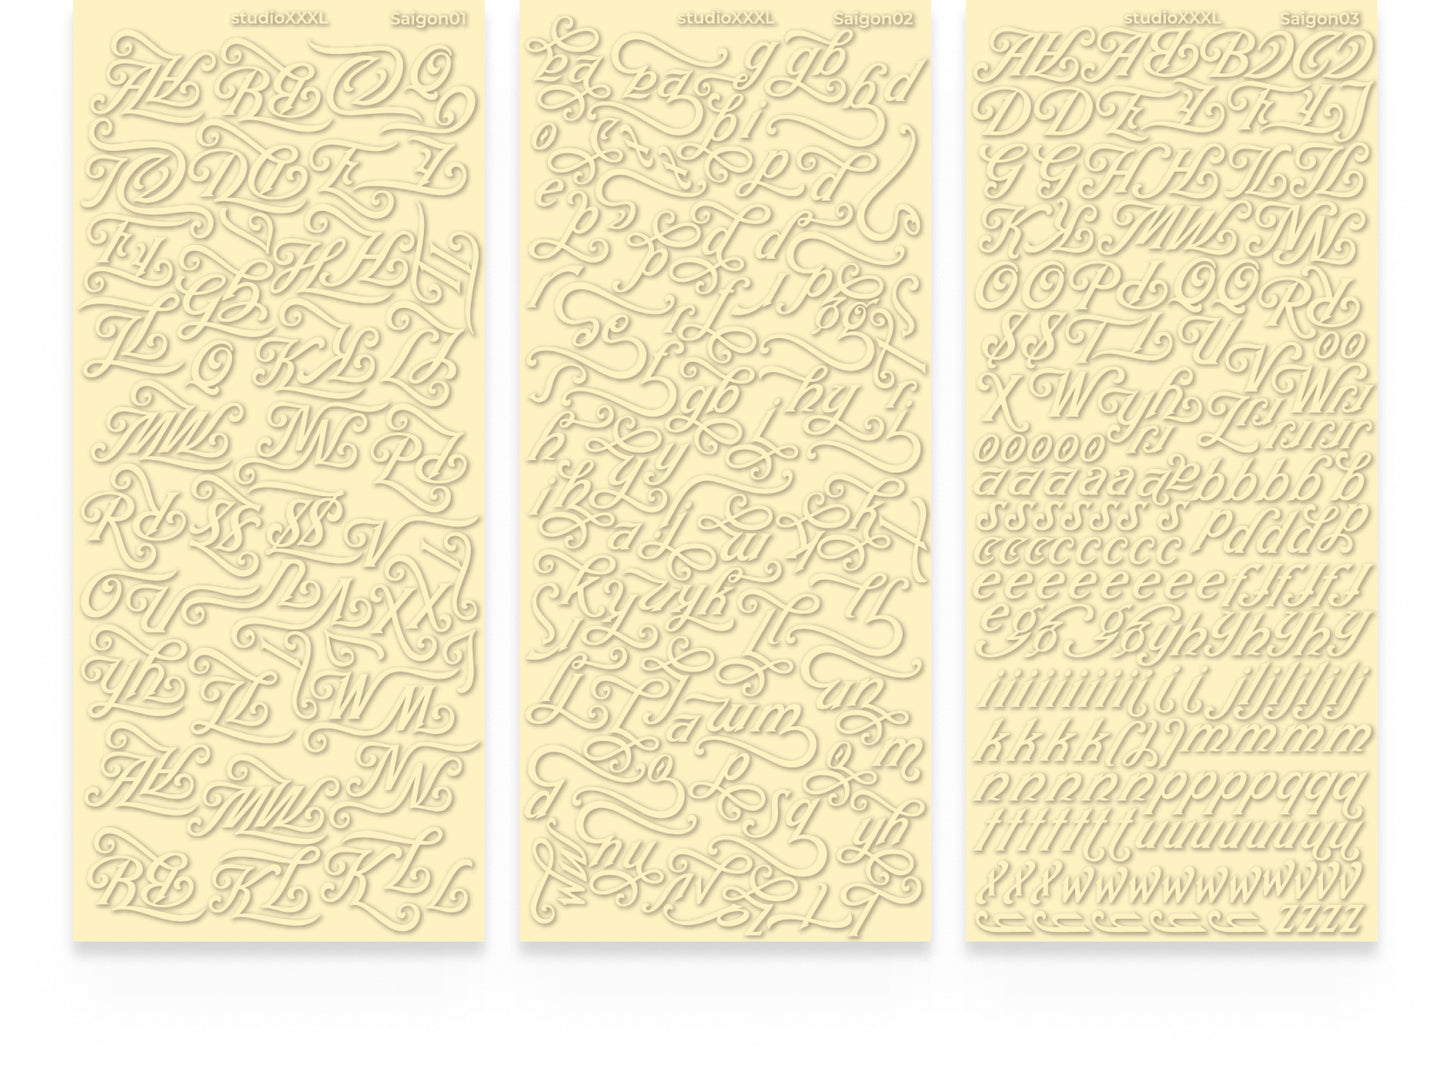 [StudioXXXL] Letter Sticker Saigon (7 colors, 3 sheets per set)